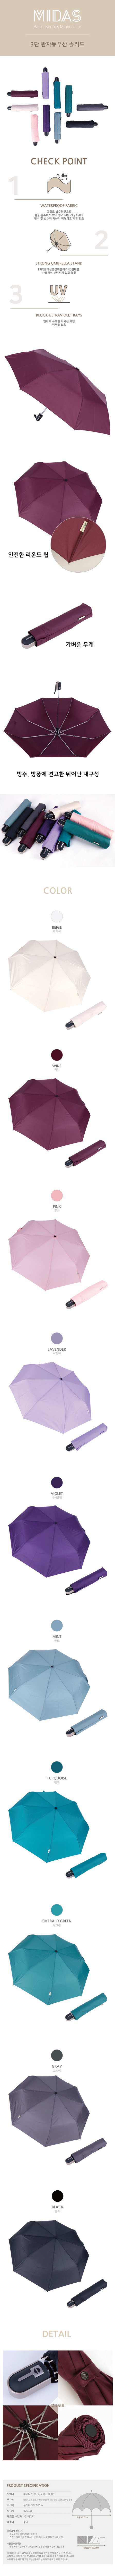 마이다스 3단전자동 솔리드 우산